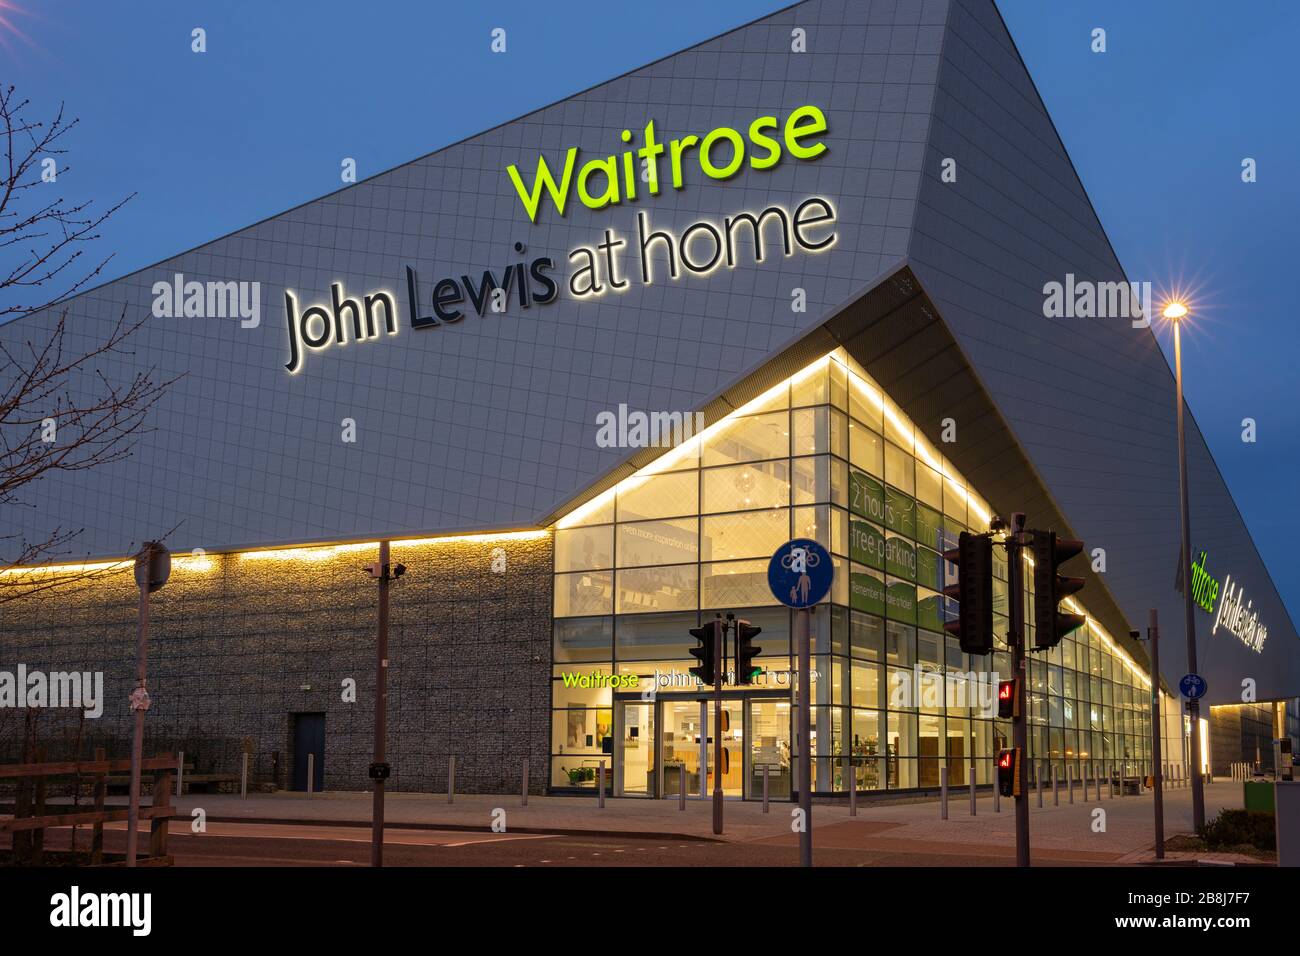 Waitrose supermarché et John Lewis à la maison illuminés la nuit, Basingstoke, Hampshire, Angleterre Banque D'Images